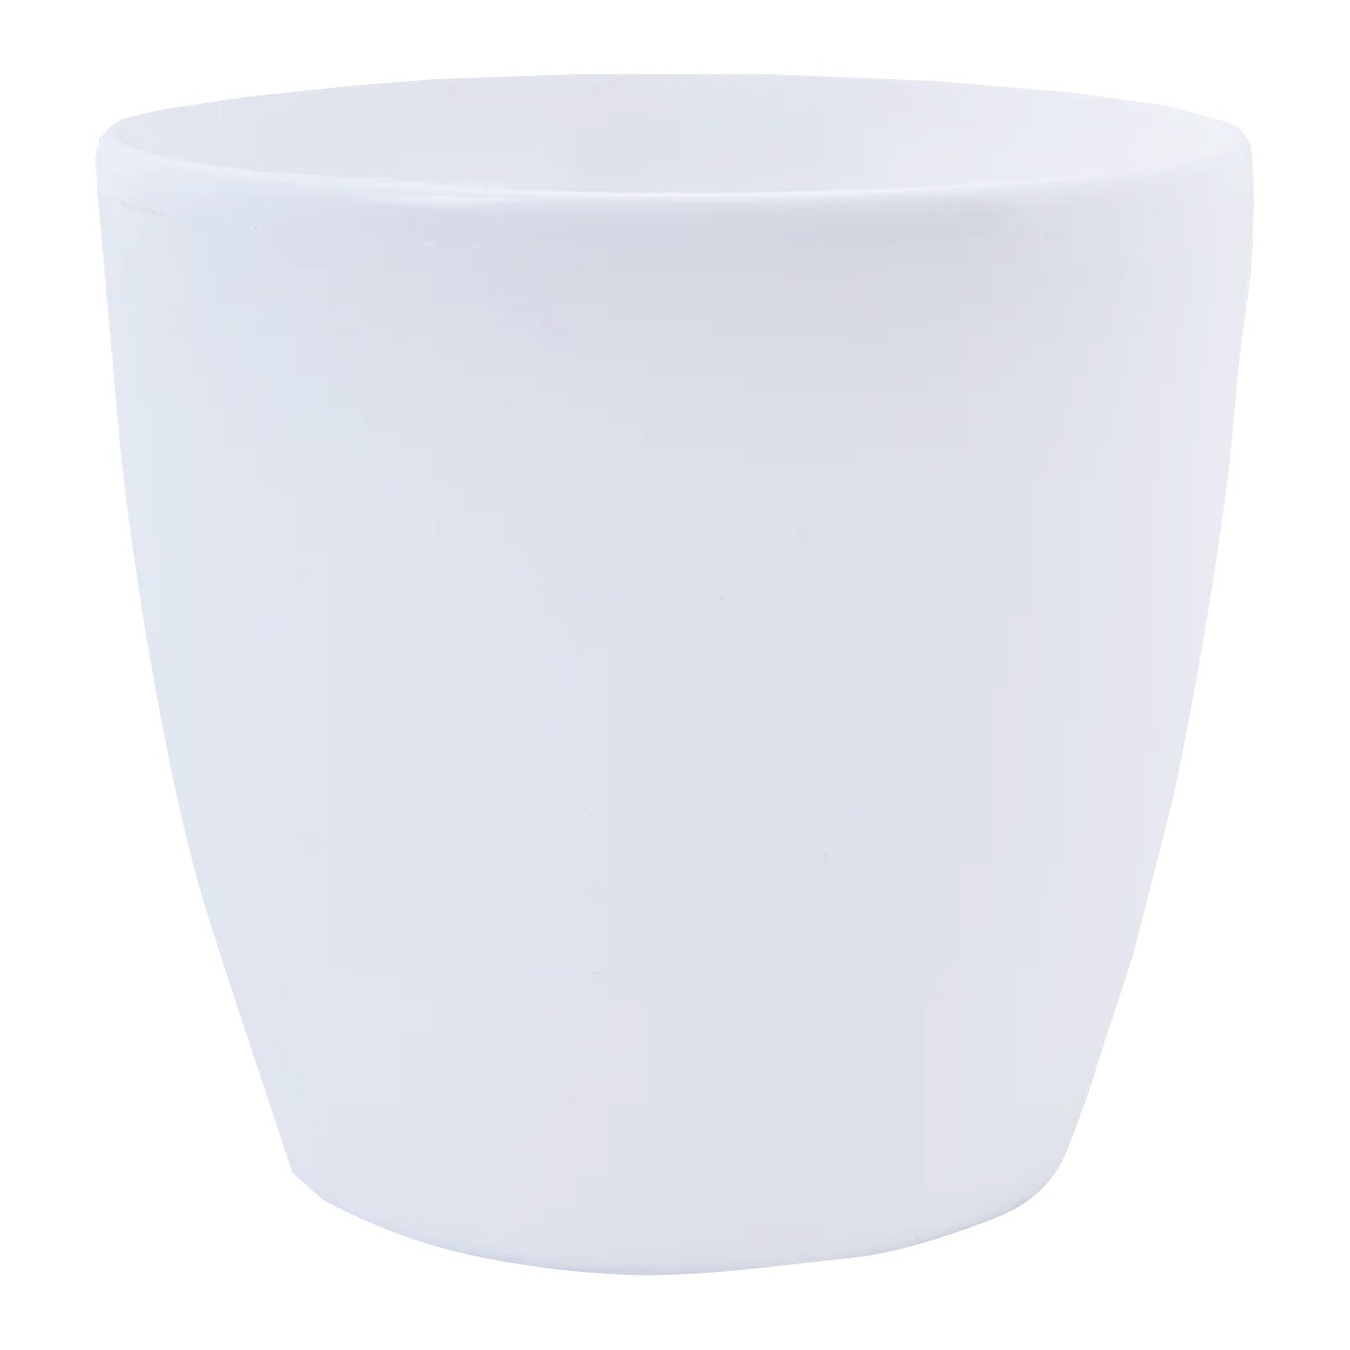 Aleana flower pot plastic Matilda 20*18 cm round white